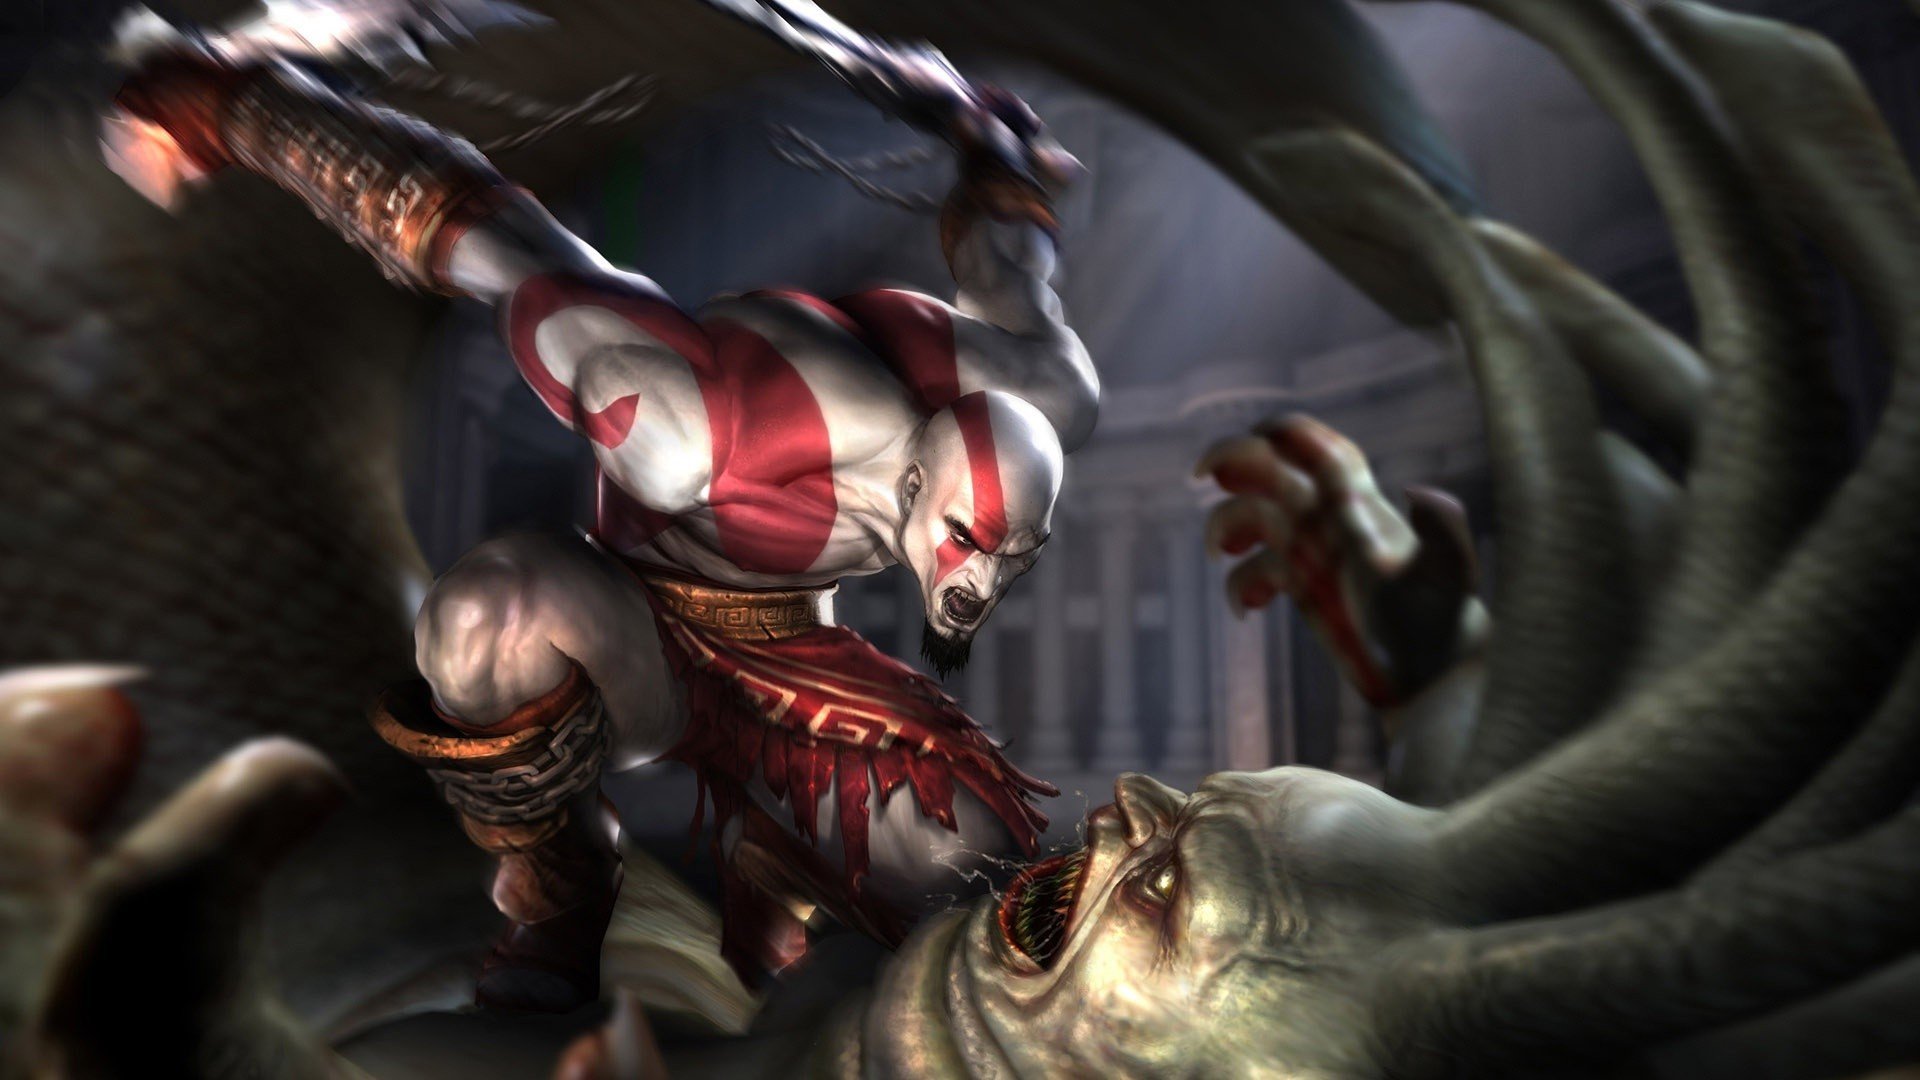 Kratos   God of War wallpaper 9347 1920x1080